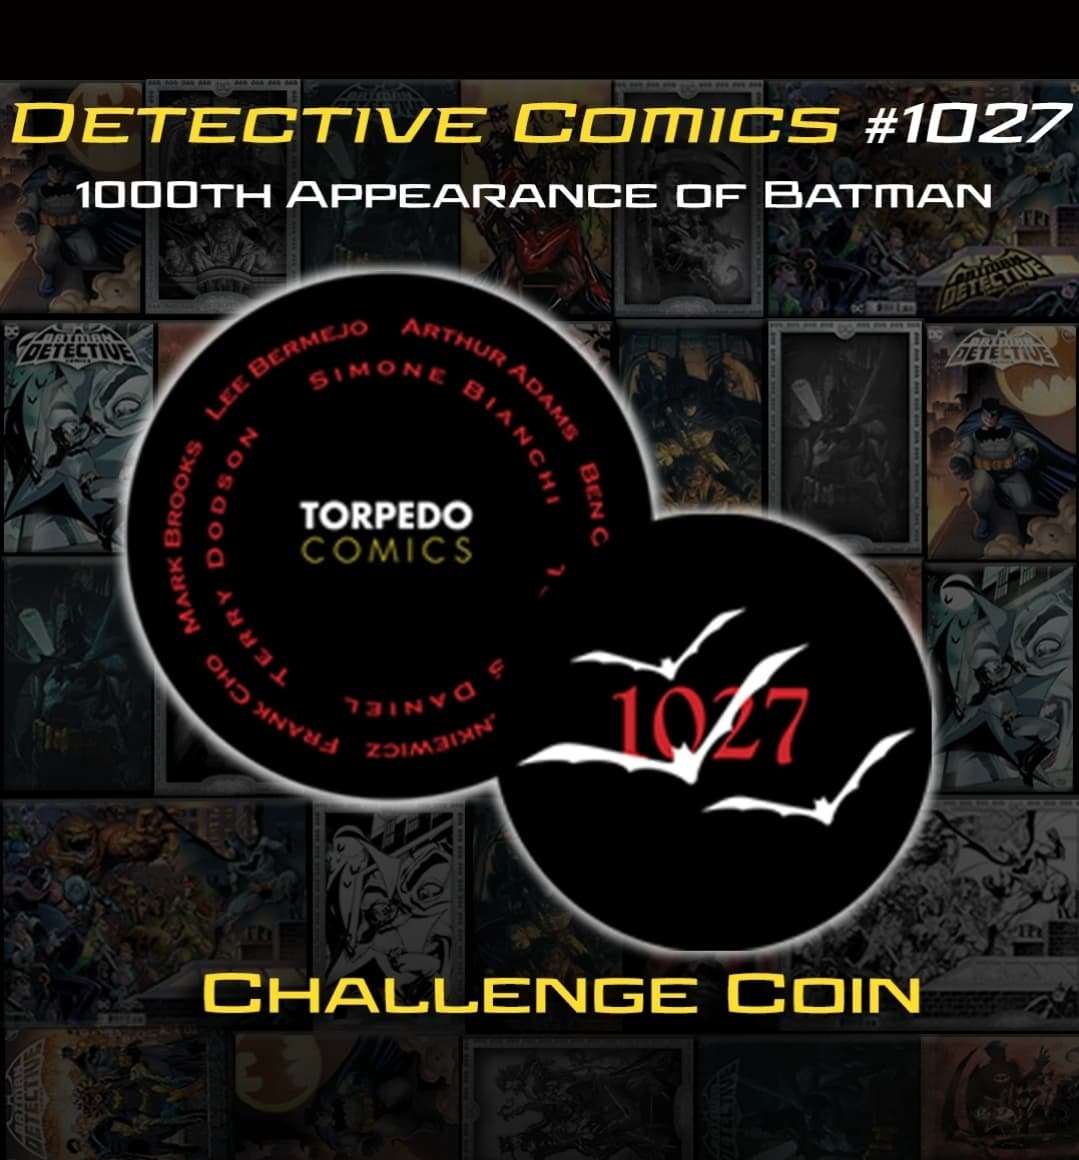 Torpedo Comics Detective Comics #1027